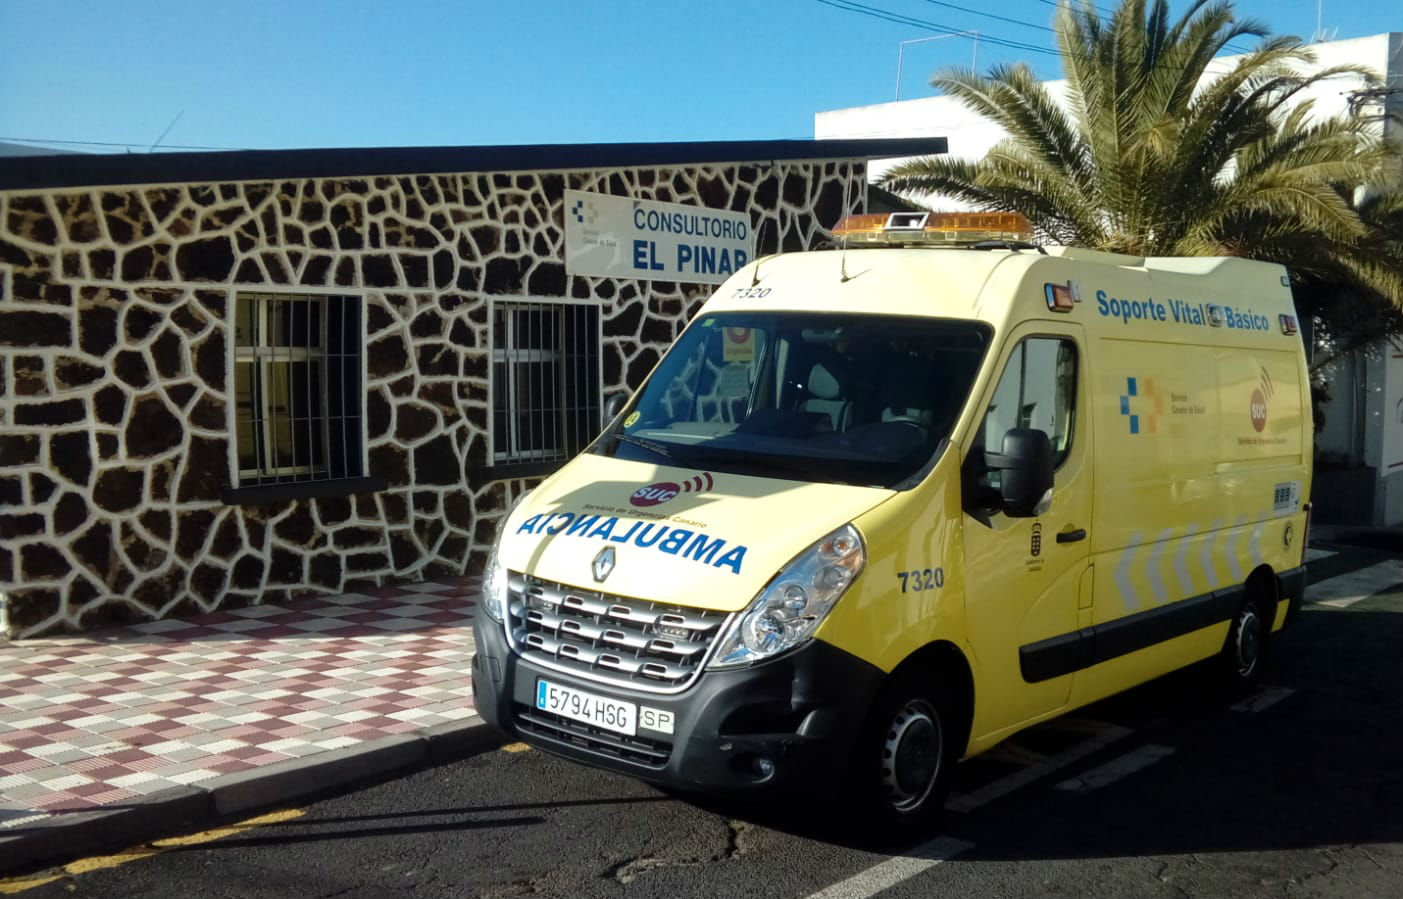 La Consejería de Sanidad amplía a 24 horas el horario de la ambulancia del SUC en El Pinar